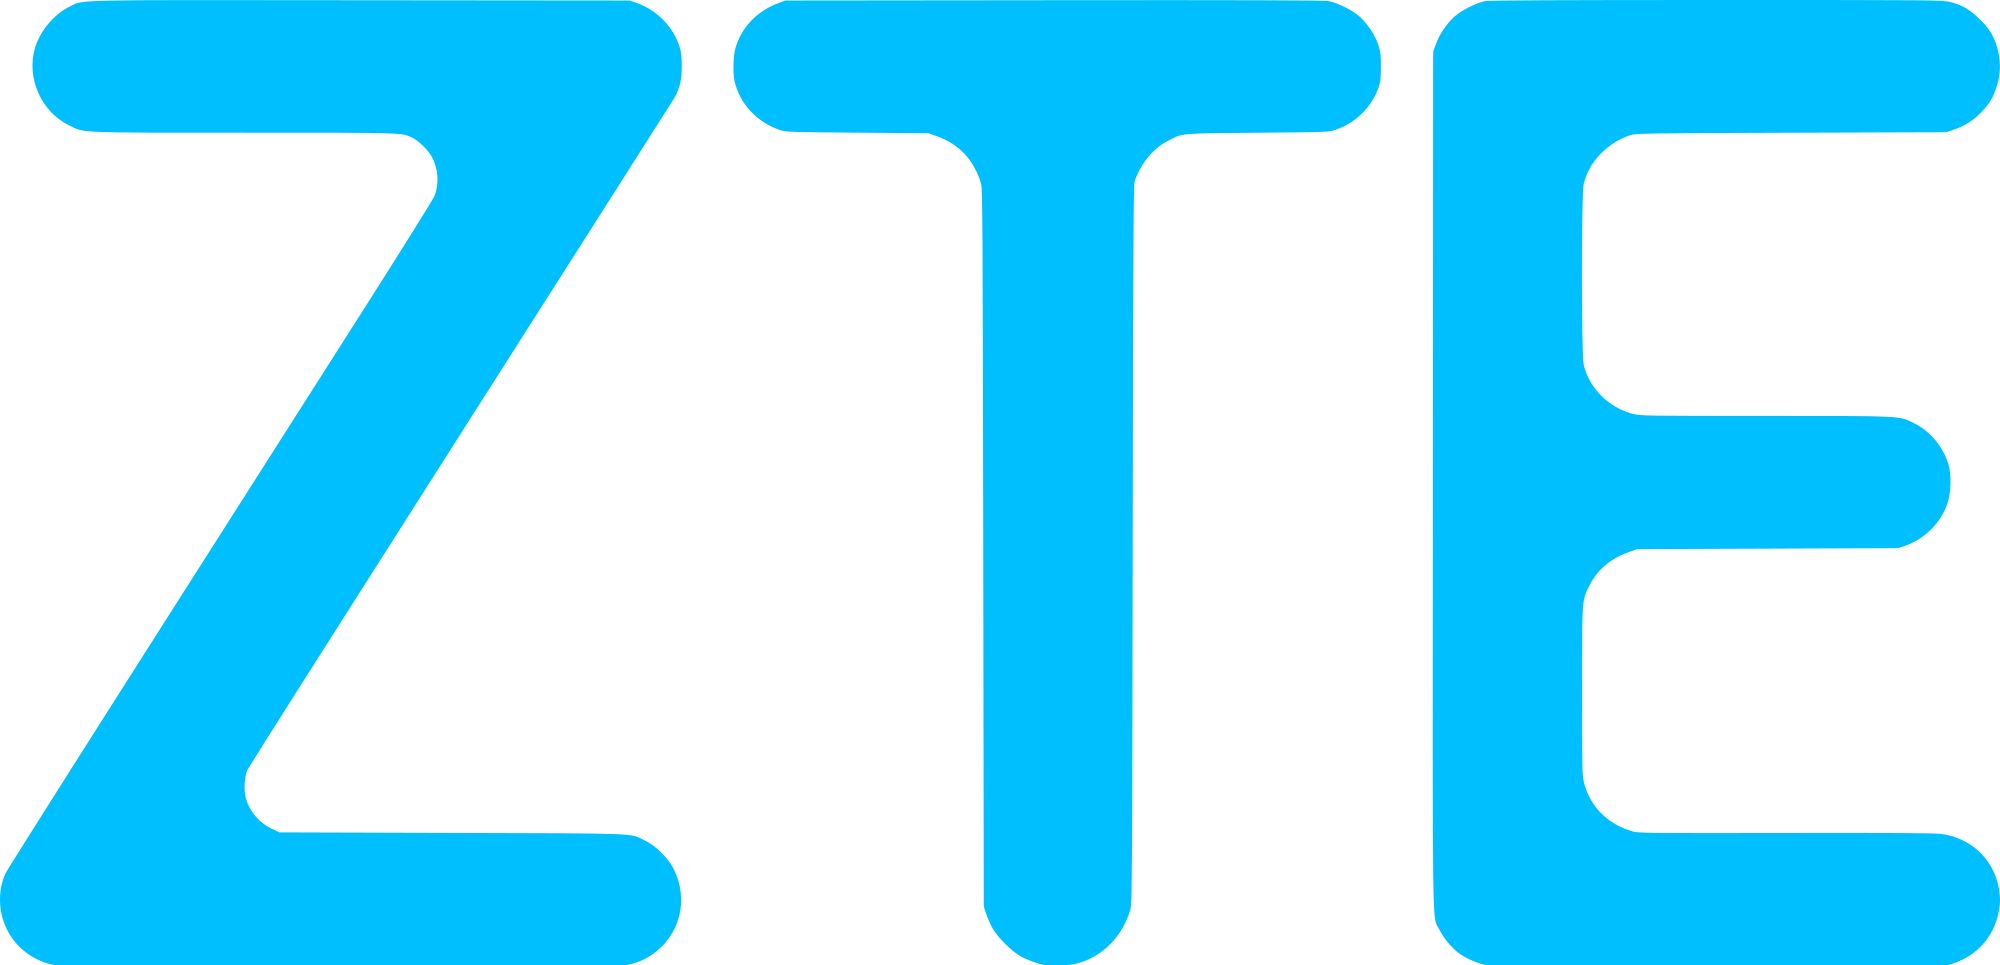 Logo Zte PNG - 116035